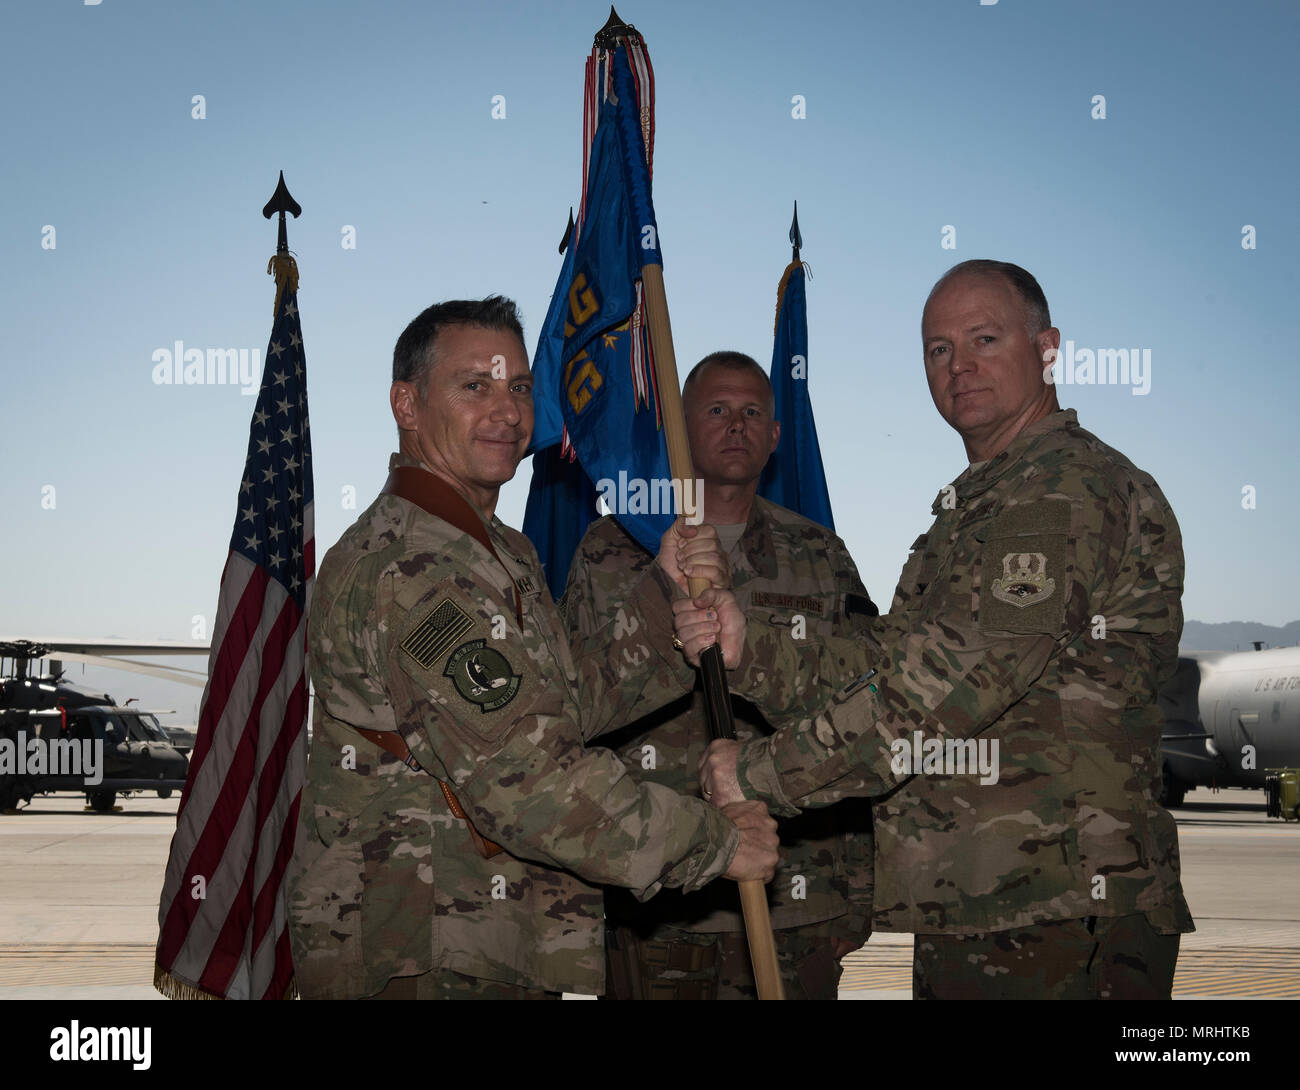 El Coronel Tim Trimmell entrante, el comandante del grupo de mantenimiento expedicionaria 455a, recibe la 455EMXG guidon de Brig. Gen. Craig Baker, el comandante de ala expedicionaria aérea 455A, oficialmente concediéndole el mando de la 455EMXG durante una ceremonia de cambio de mando en el aeródromo de Bagram, Afganistán, 17 de junio de 2017. Trimmell servido previamente como las Fuerzas Aéreas de los Estados Unidos Reino Europe-United director adjunto. (Ee.Uu. Foto de la fuerza aérea por el Sargento. Benjamin Gonsier) Foto de stock